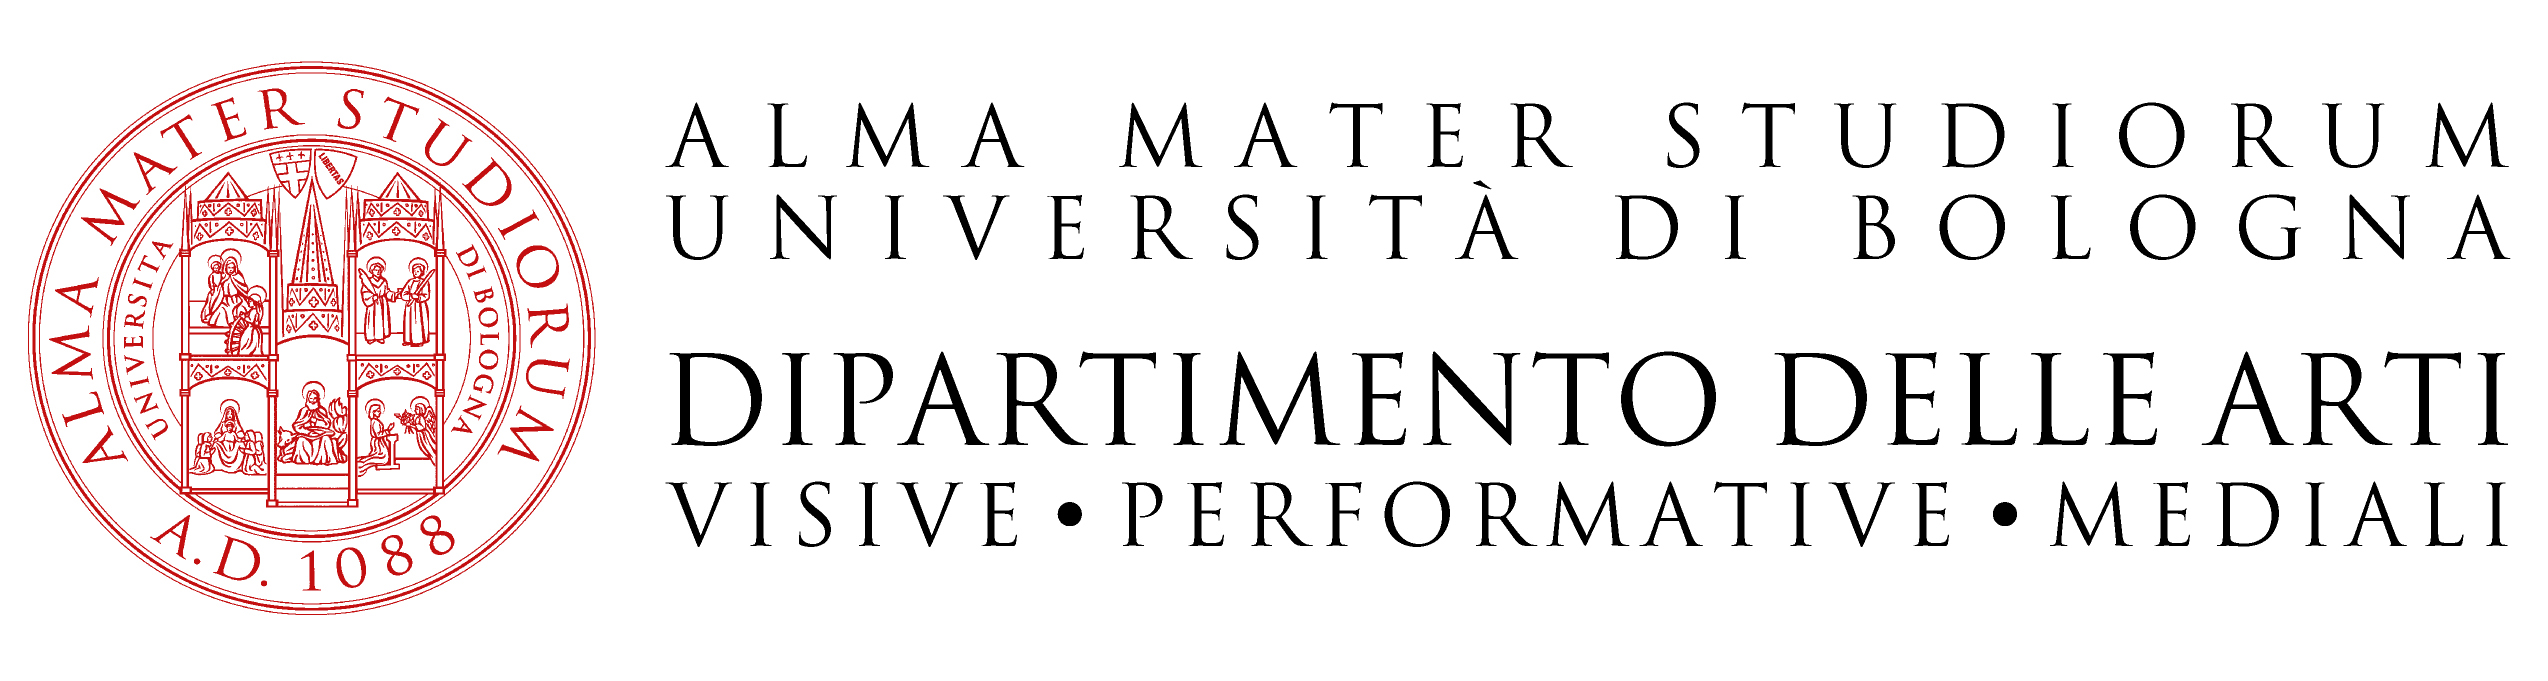 Dipartimento delle Arti, Alma Mater Studiorum - Università di Bologna